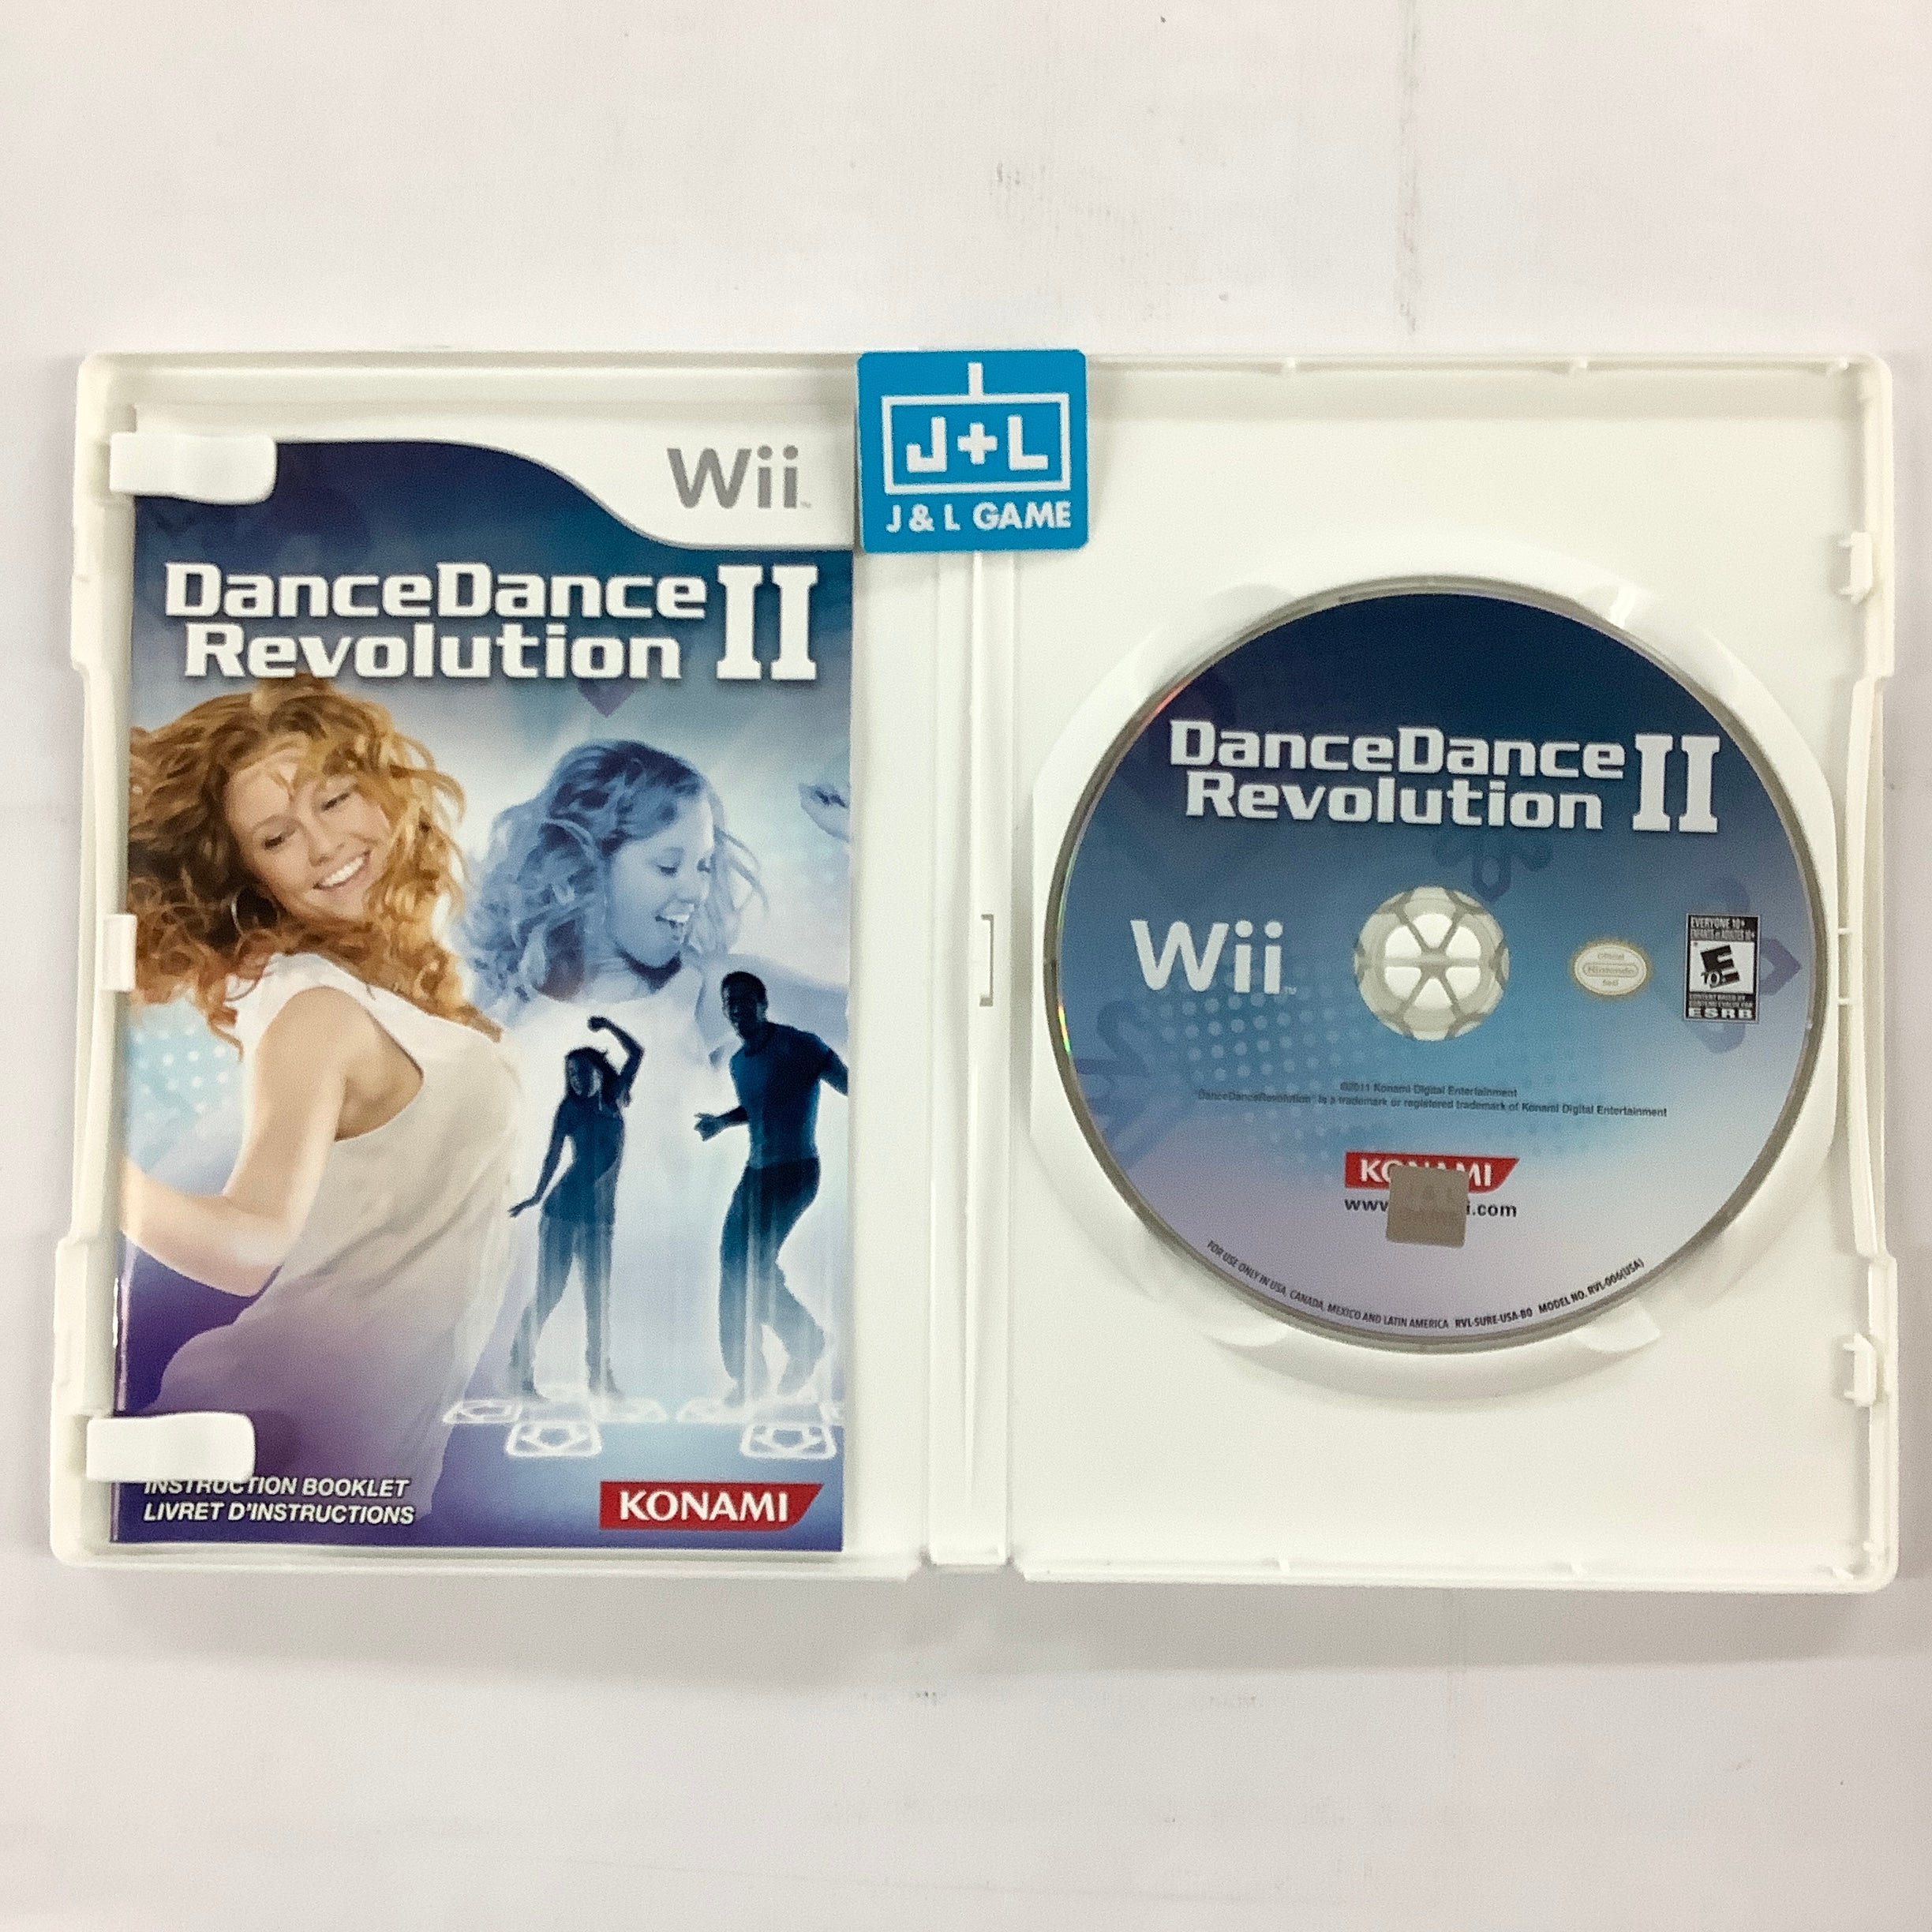 DanceDanceRevolution II - Nintendo Wii [Pre-Owned] Video Games Konami   